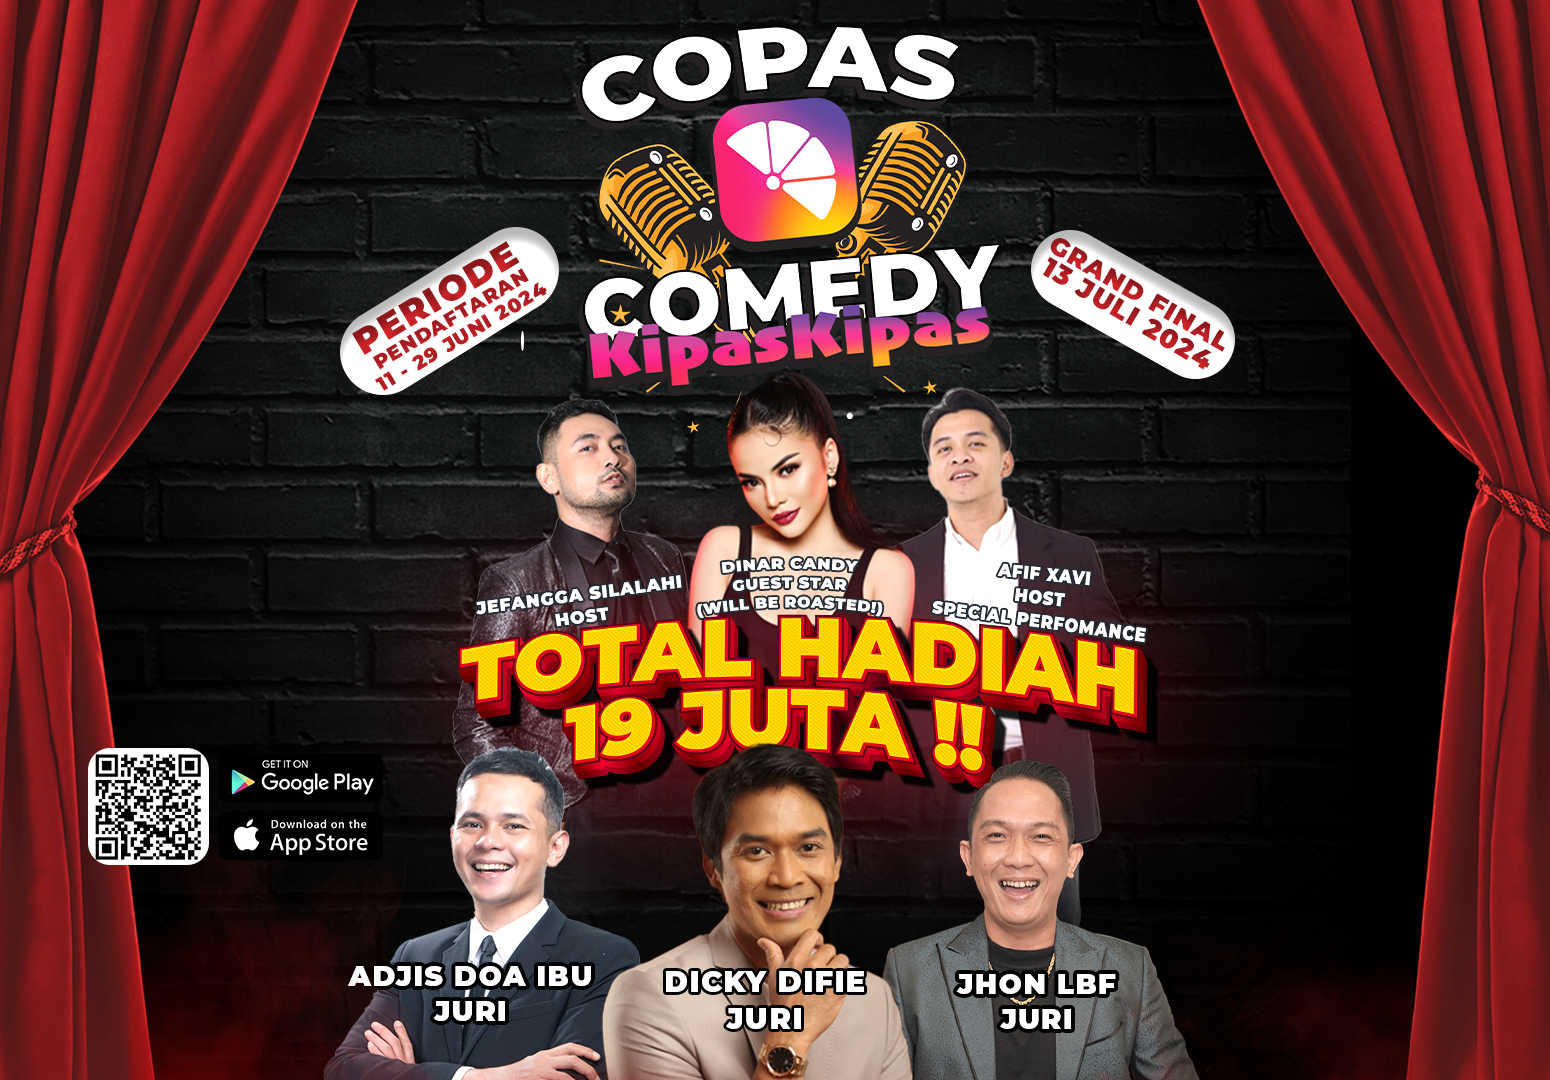 Aplikasi Kipas Kipas berdiri pada 23 Juni 2020 di bawah naungan PT. Koanba menghadirkan lomba StandUp Comedy “COPAS (Comedy KipasKipas)”